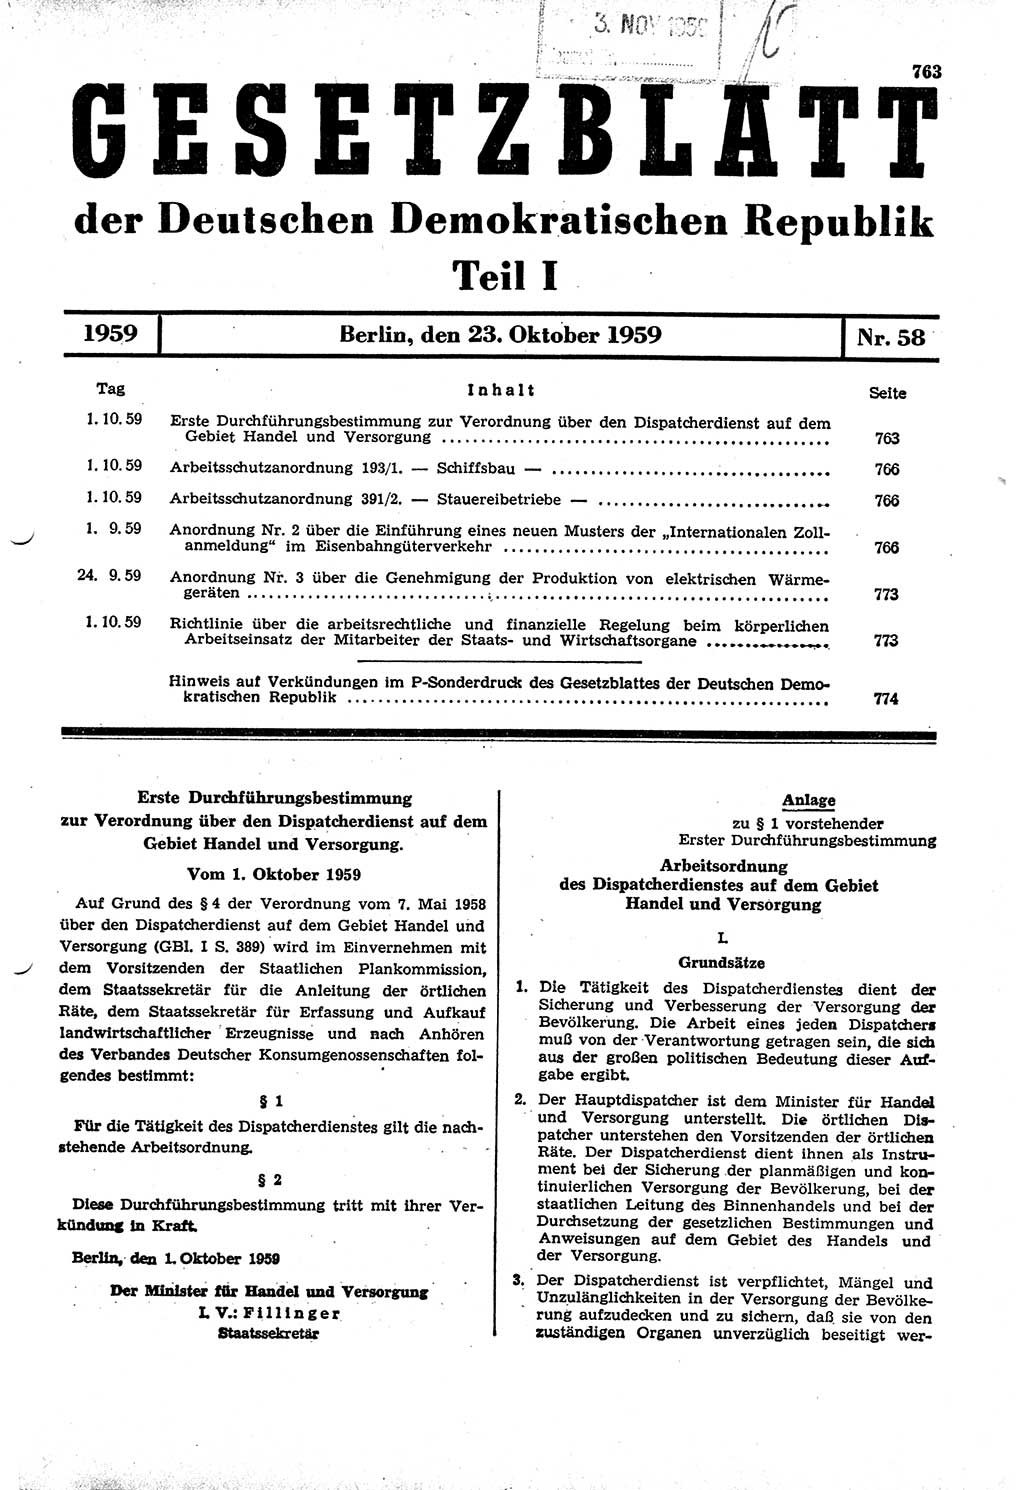 Gesetzblatt (GBl.) der Deutschen Demokratischen Republik (DDR) Teil Ⅰ 1959, Seite 763 (GBl. DDR Ⅰ 1959, S. 763)